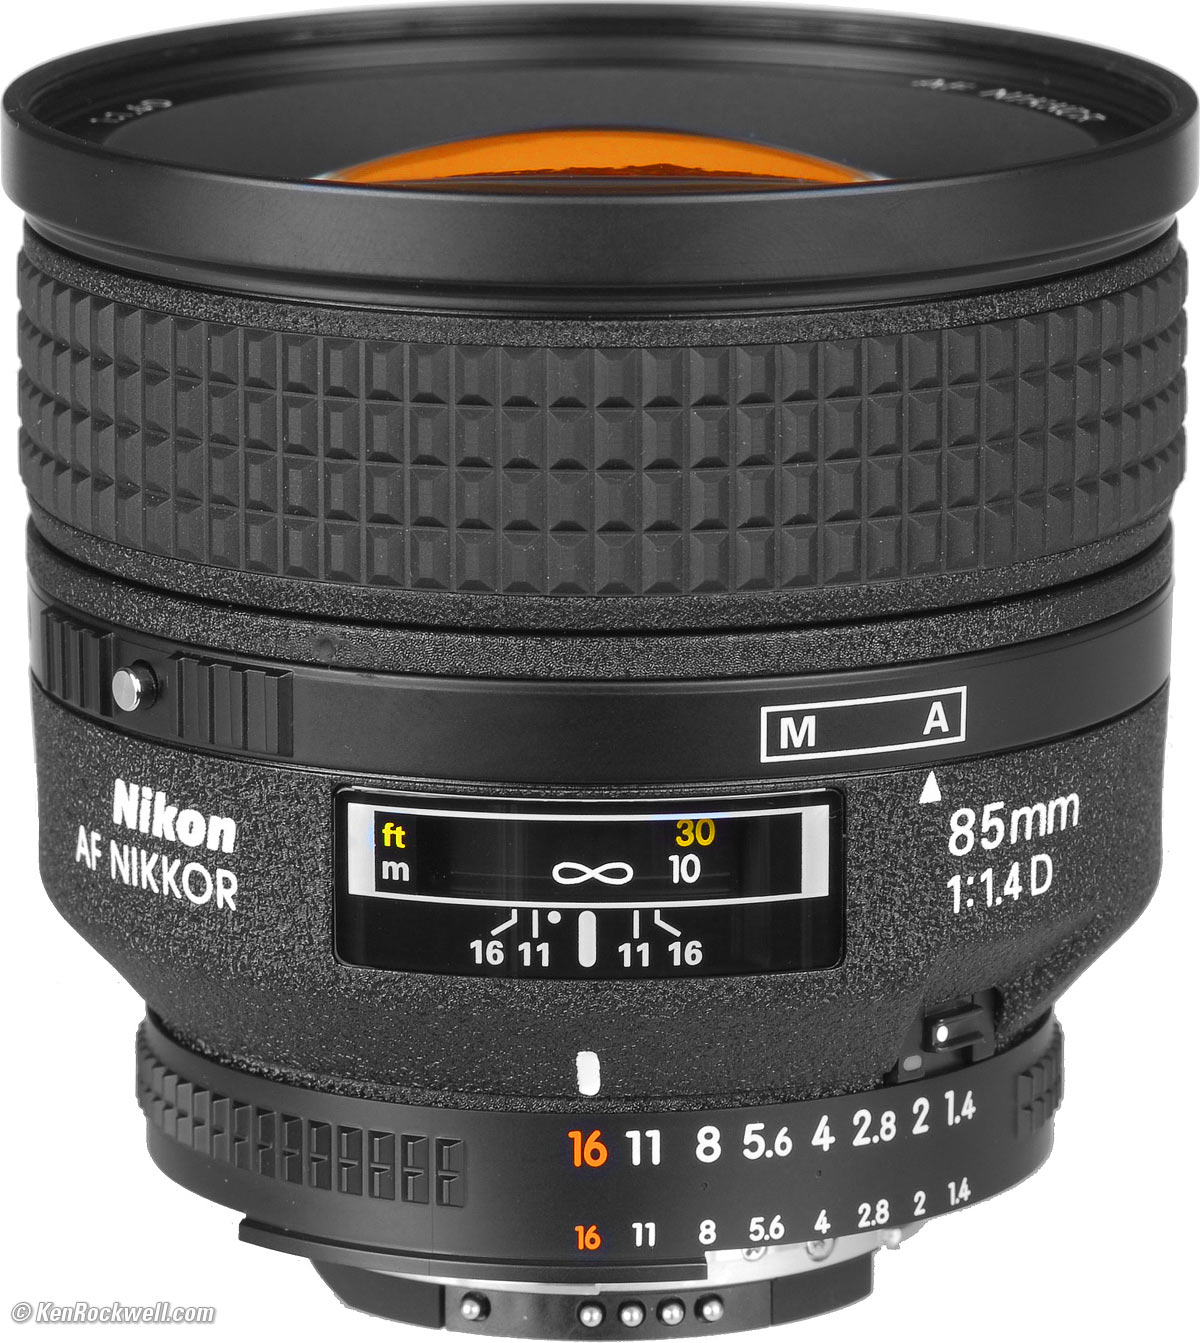 Nikon Ai AF Nikkor 85mm F1.4D-